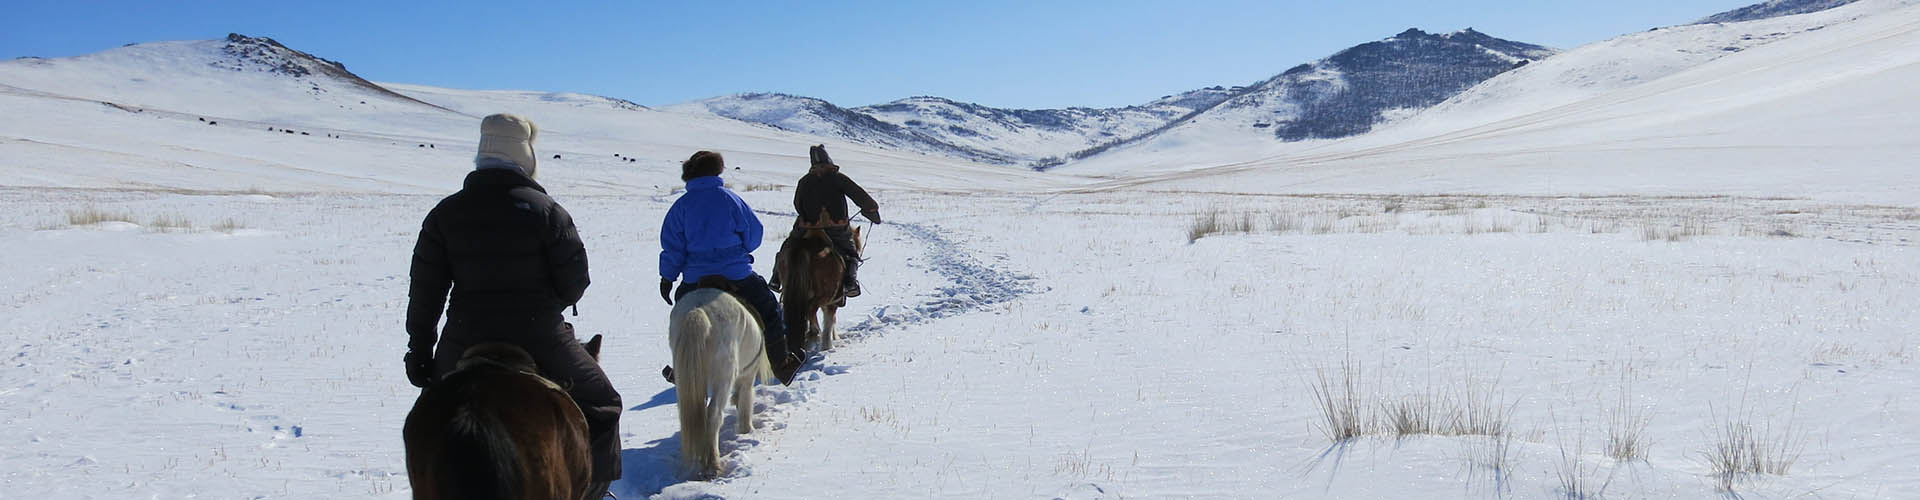 Rando Cheval Mongolie - Voyage, trek et randonnée équestre